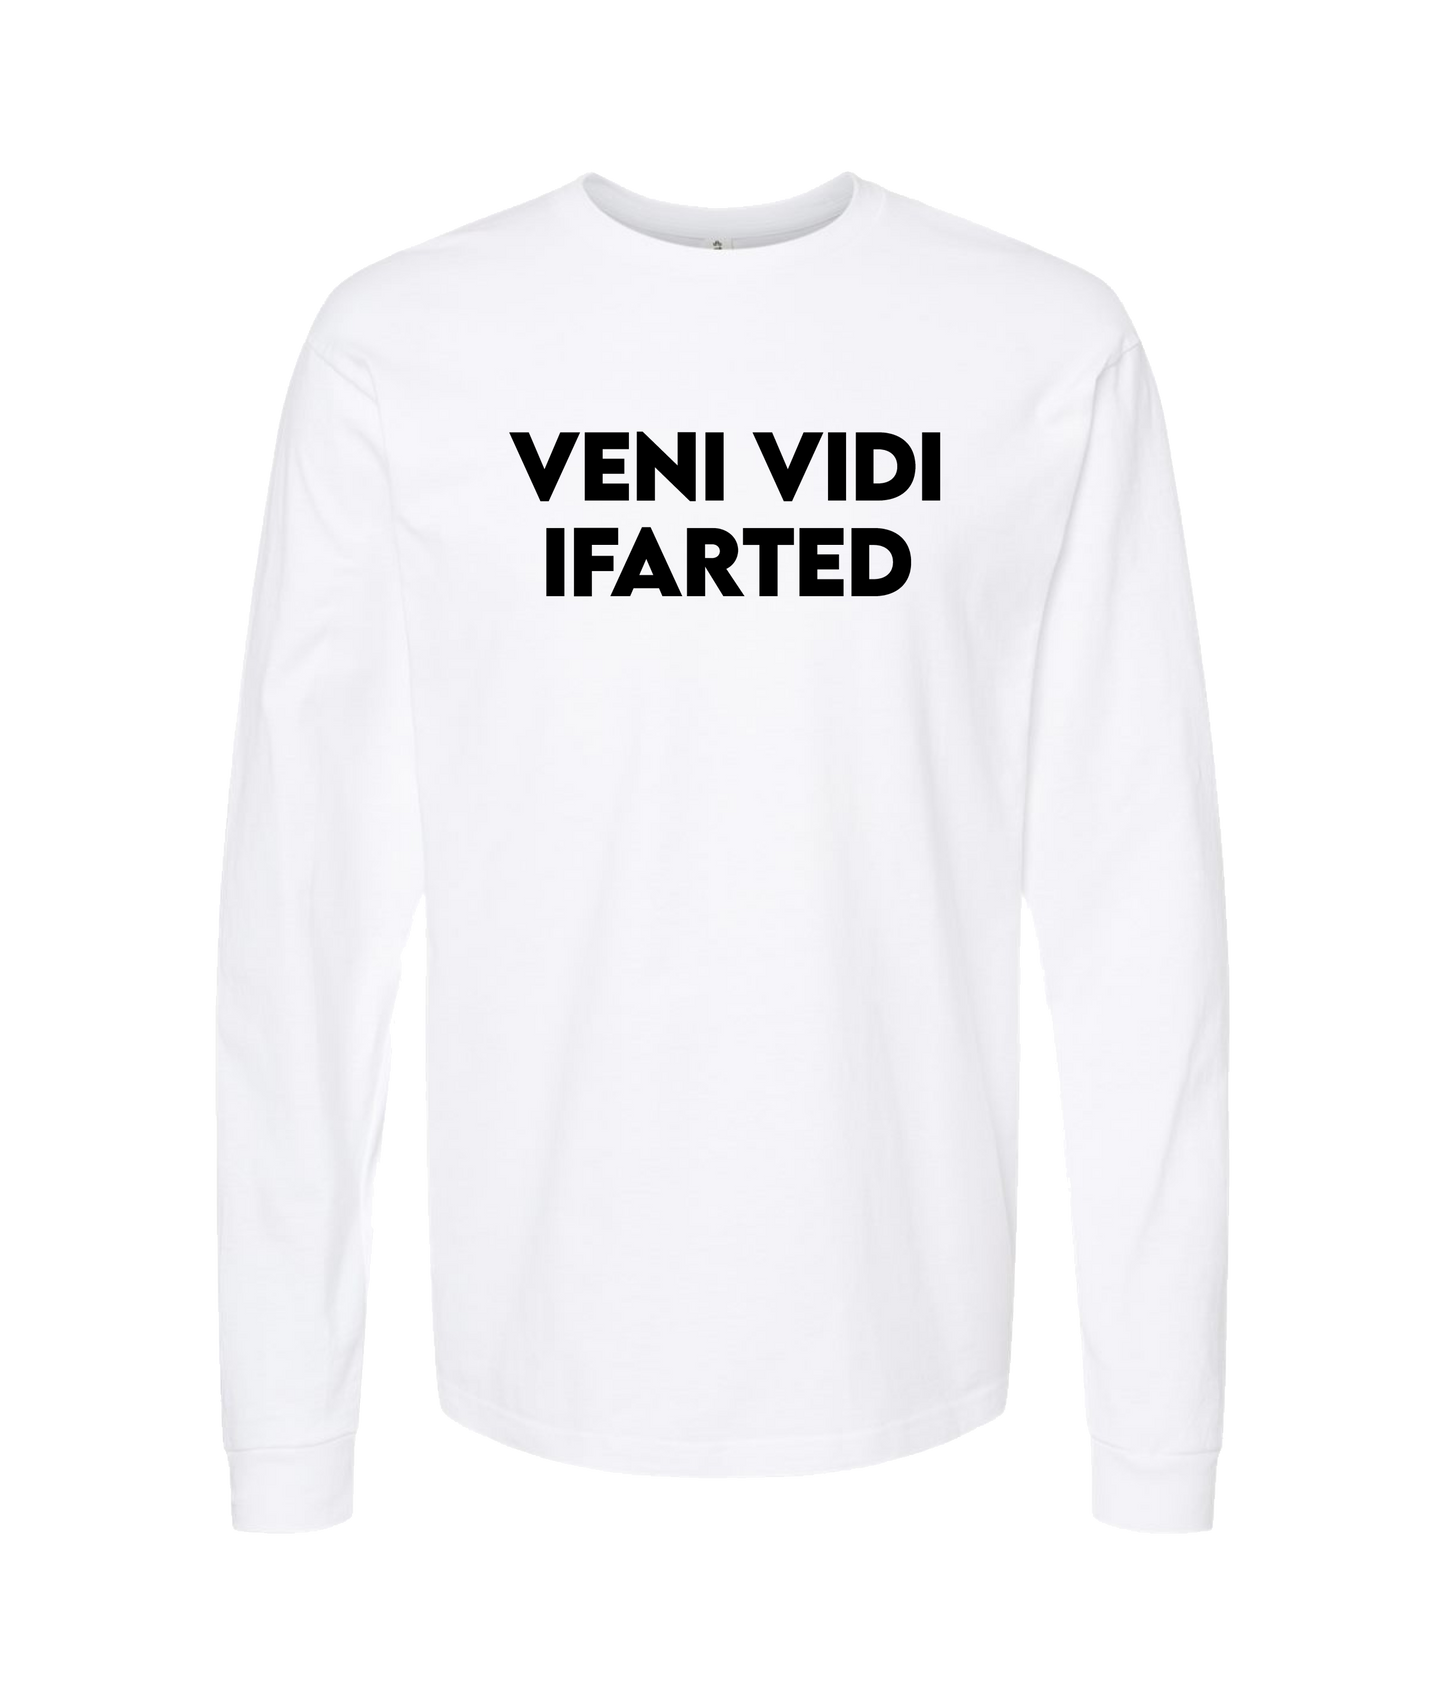 iFart - VENI VIDI - White Long Sleeve T